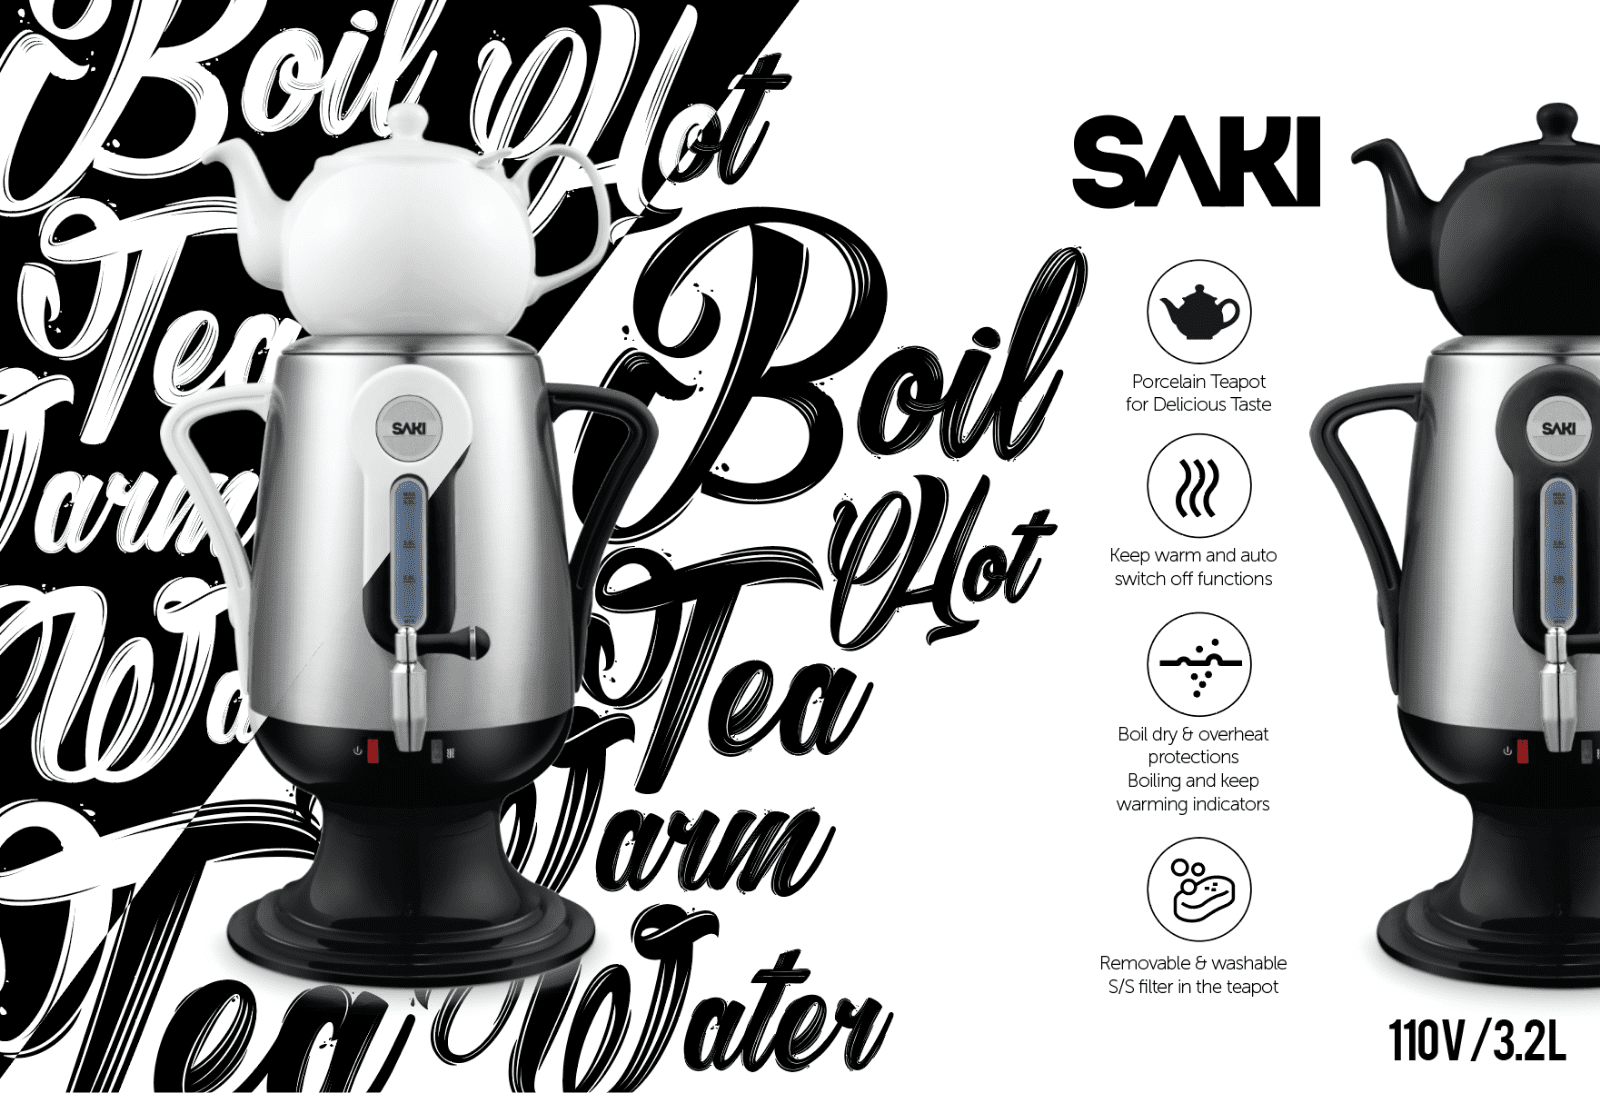 SAKI Automatic Pot Stirrer - บ้านเจ้านางน้อย บริการนำเข้า